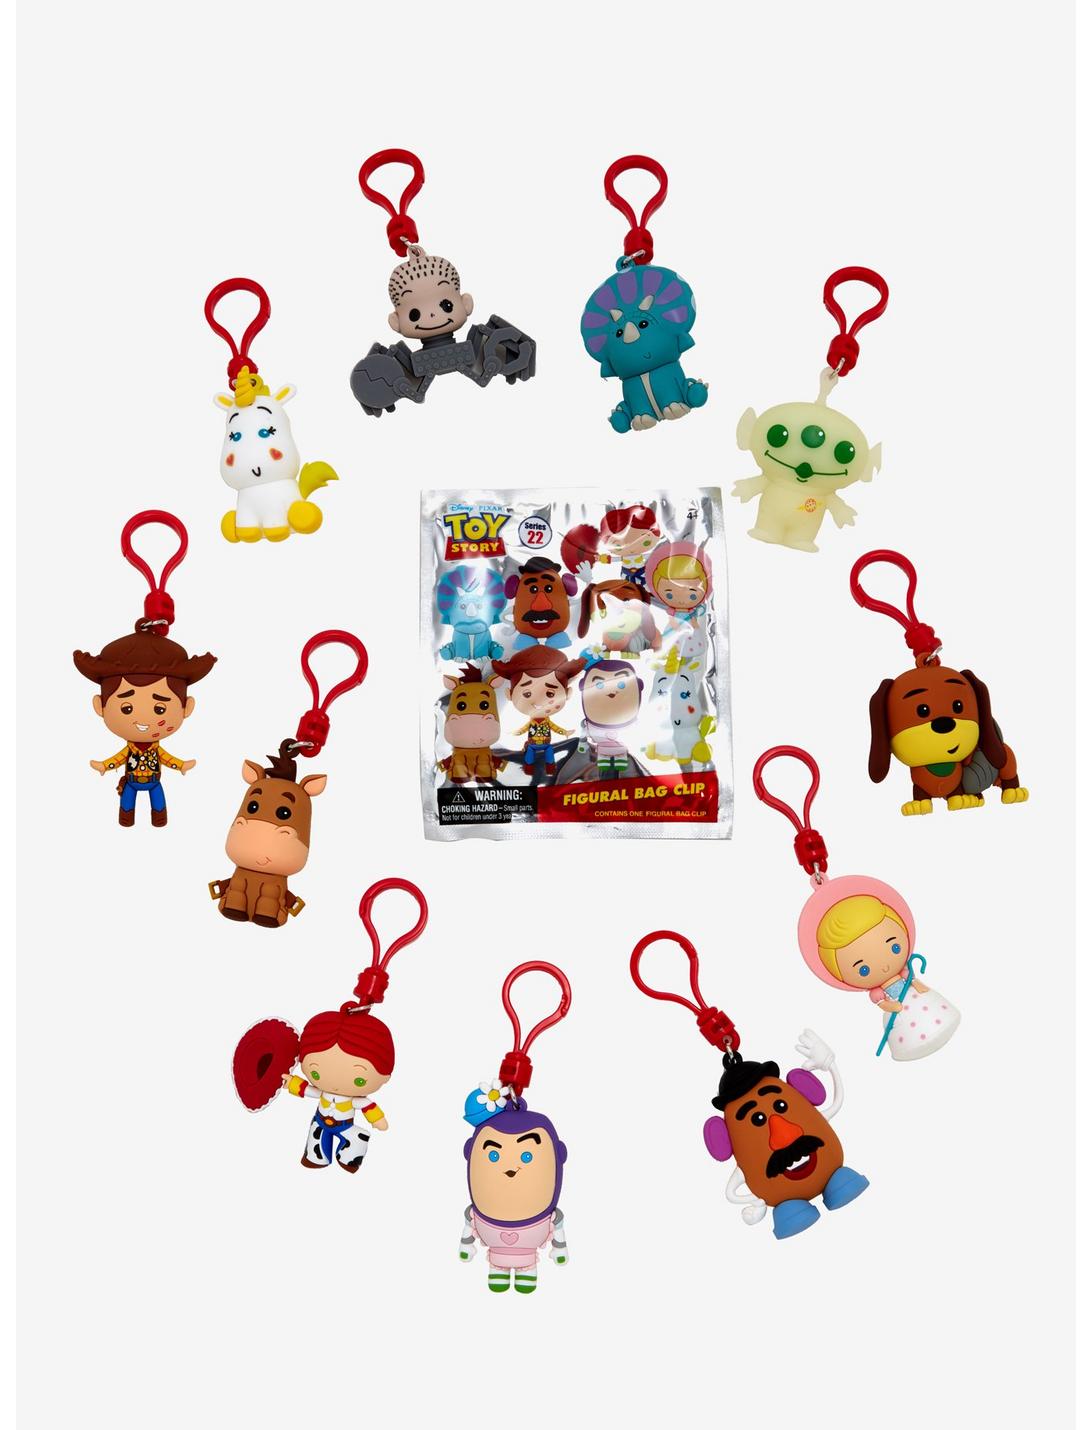 Disney Pixar Toy Story Figural Bag Clip Blind Bag, , hi-res